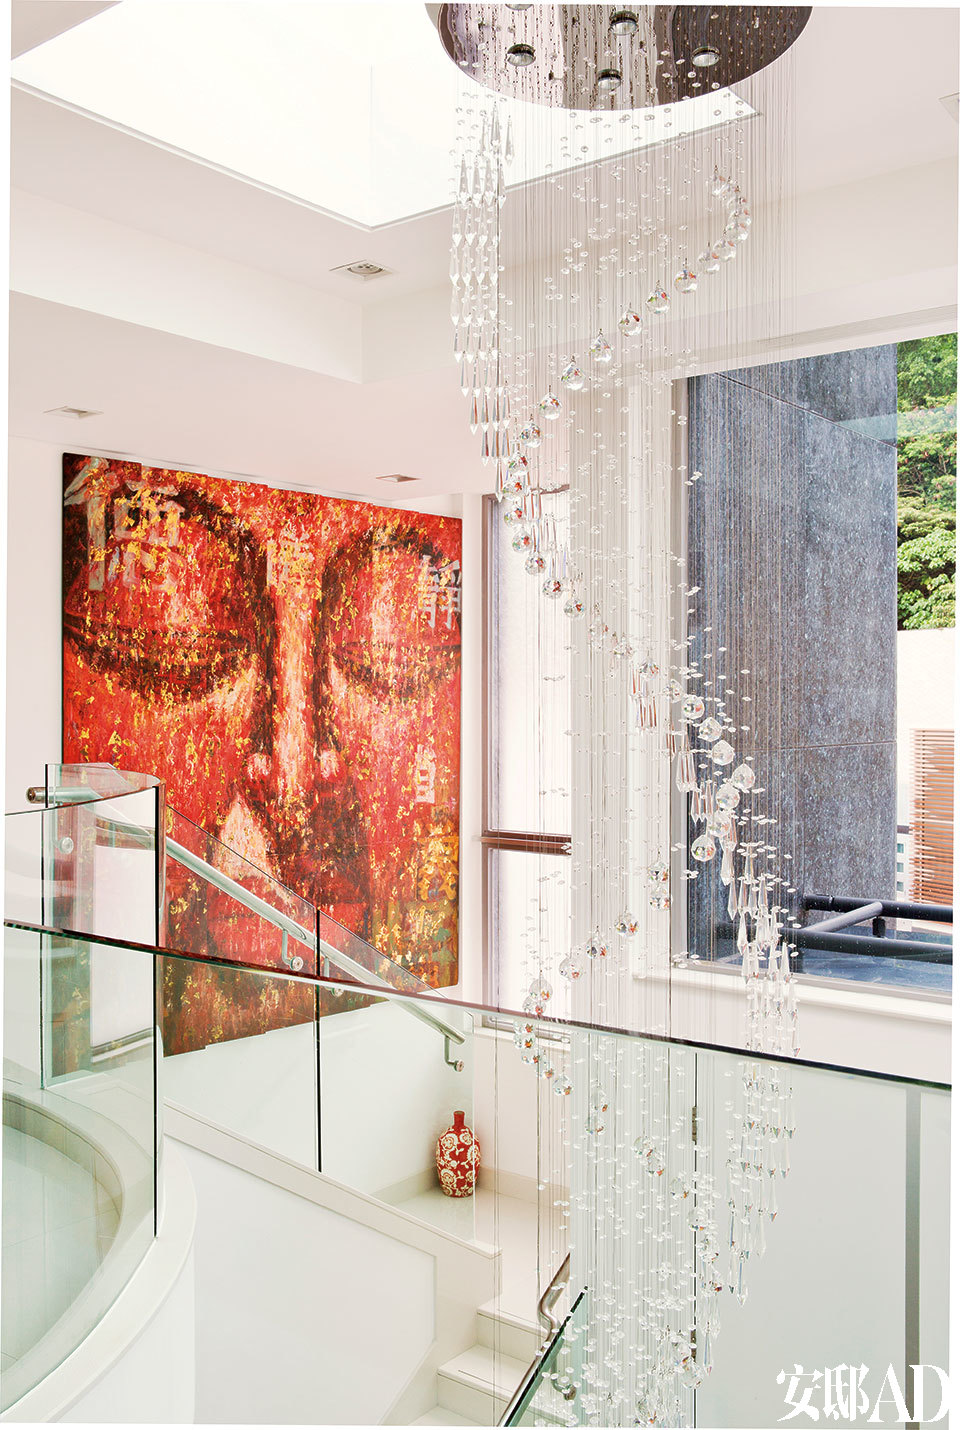 楼梯间的用色相对清淡，庞大的螺旋式玻璃雕塑增添了华美之感。一位巴厘岛艺术家的大幅佛像画作点燃了空间的热情。